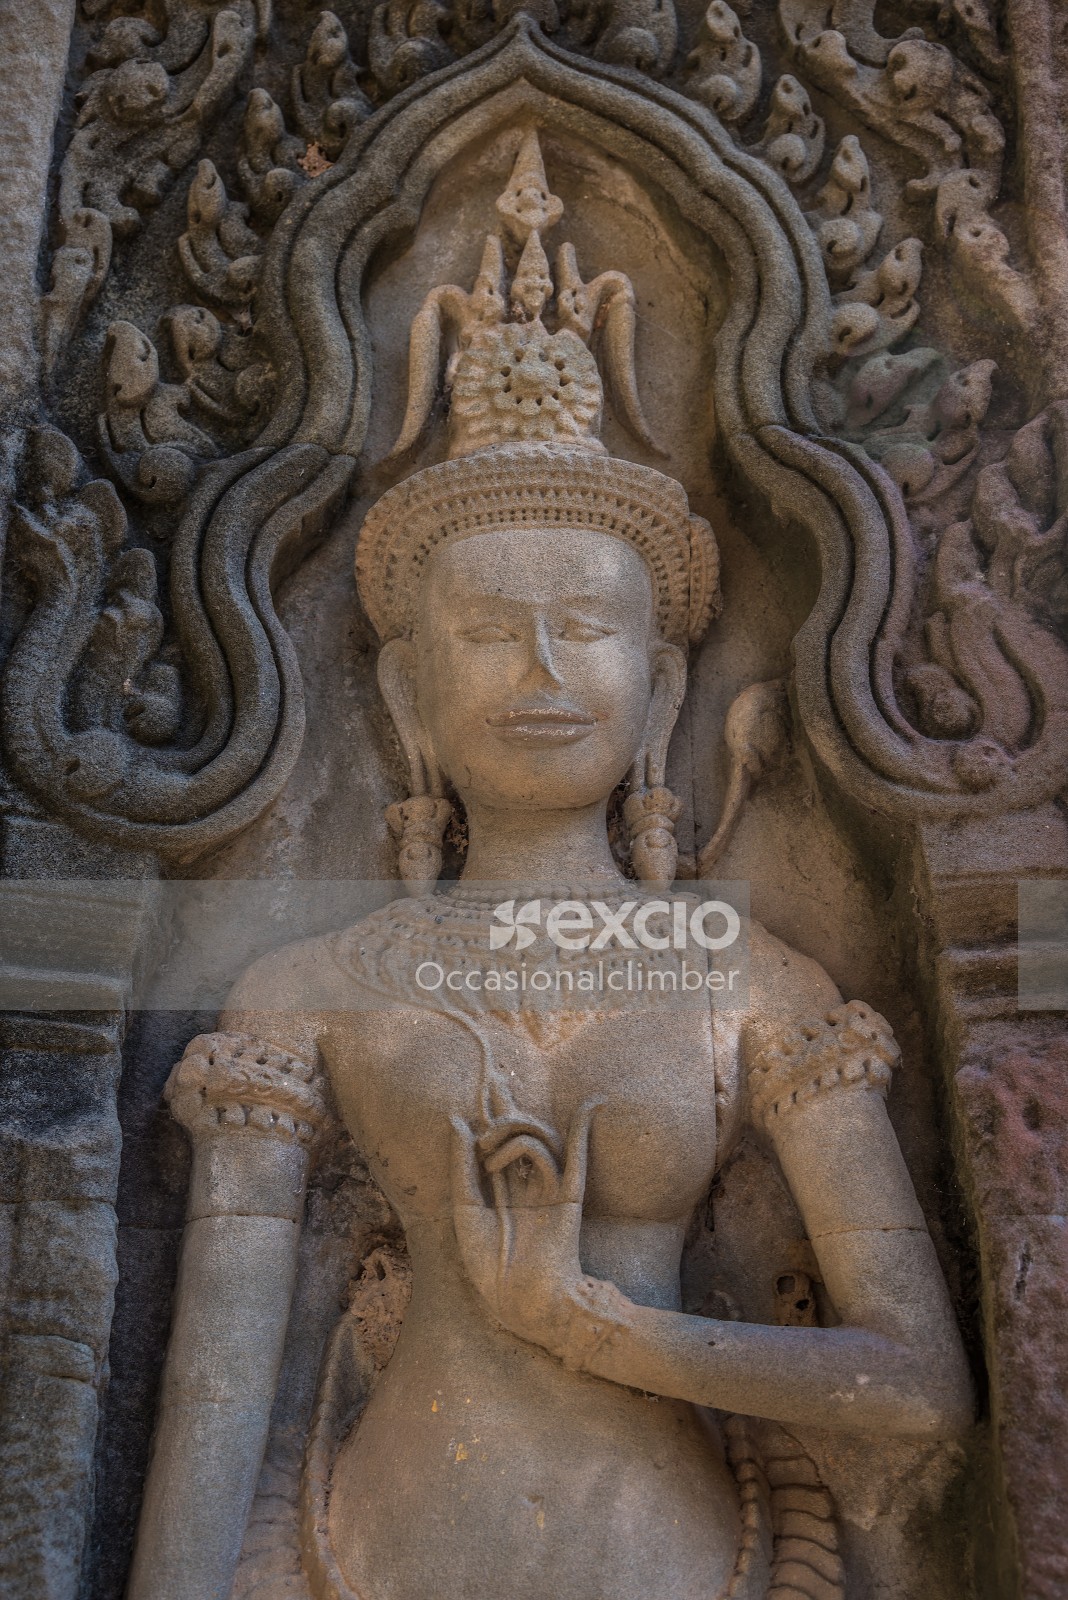 Chau Say Tevoda temple, Cambodia